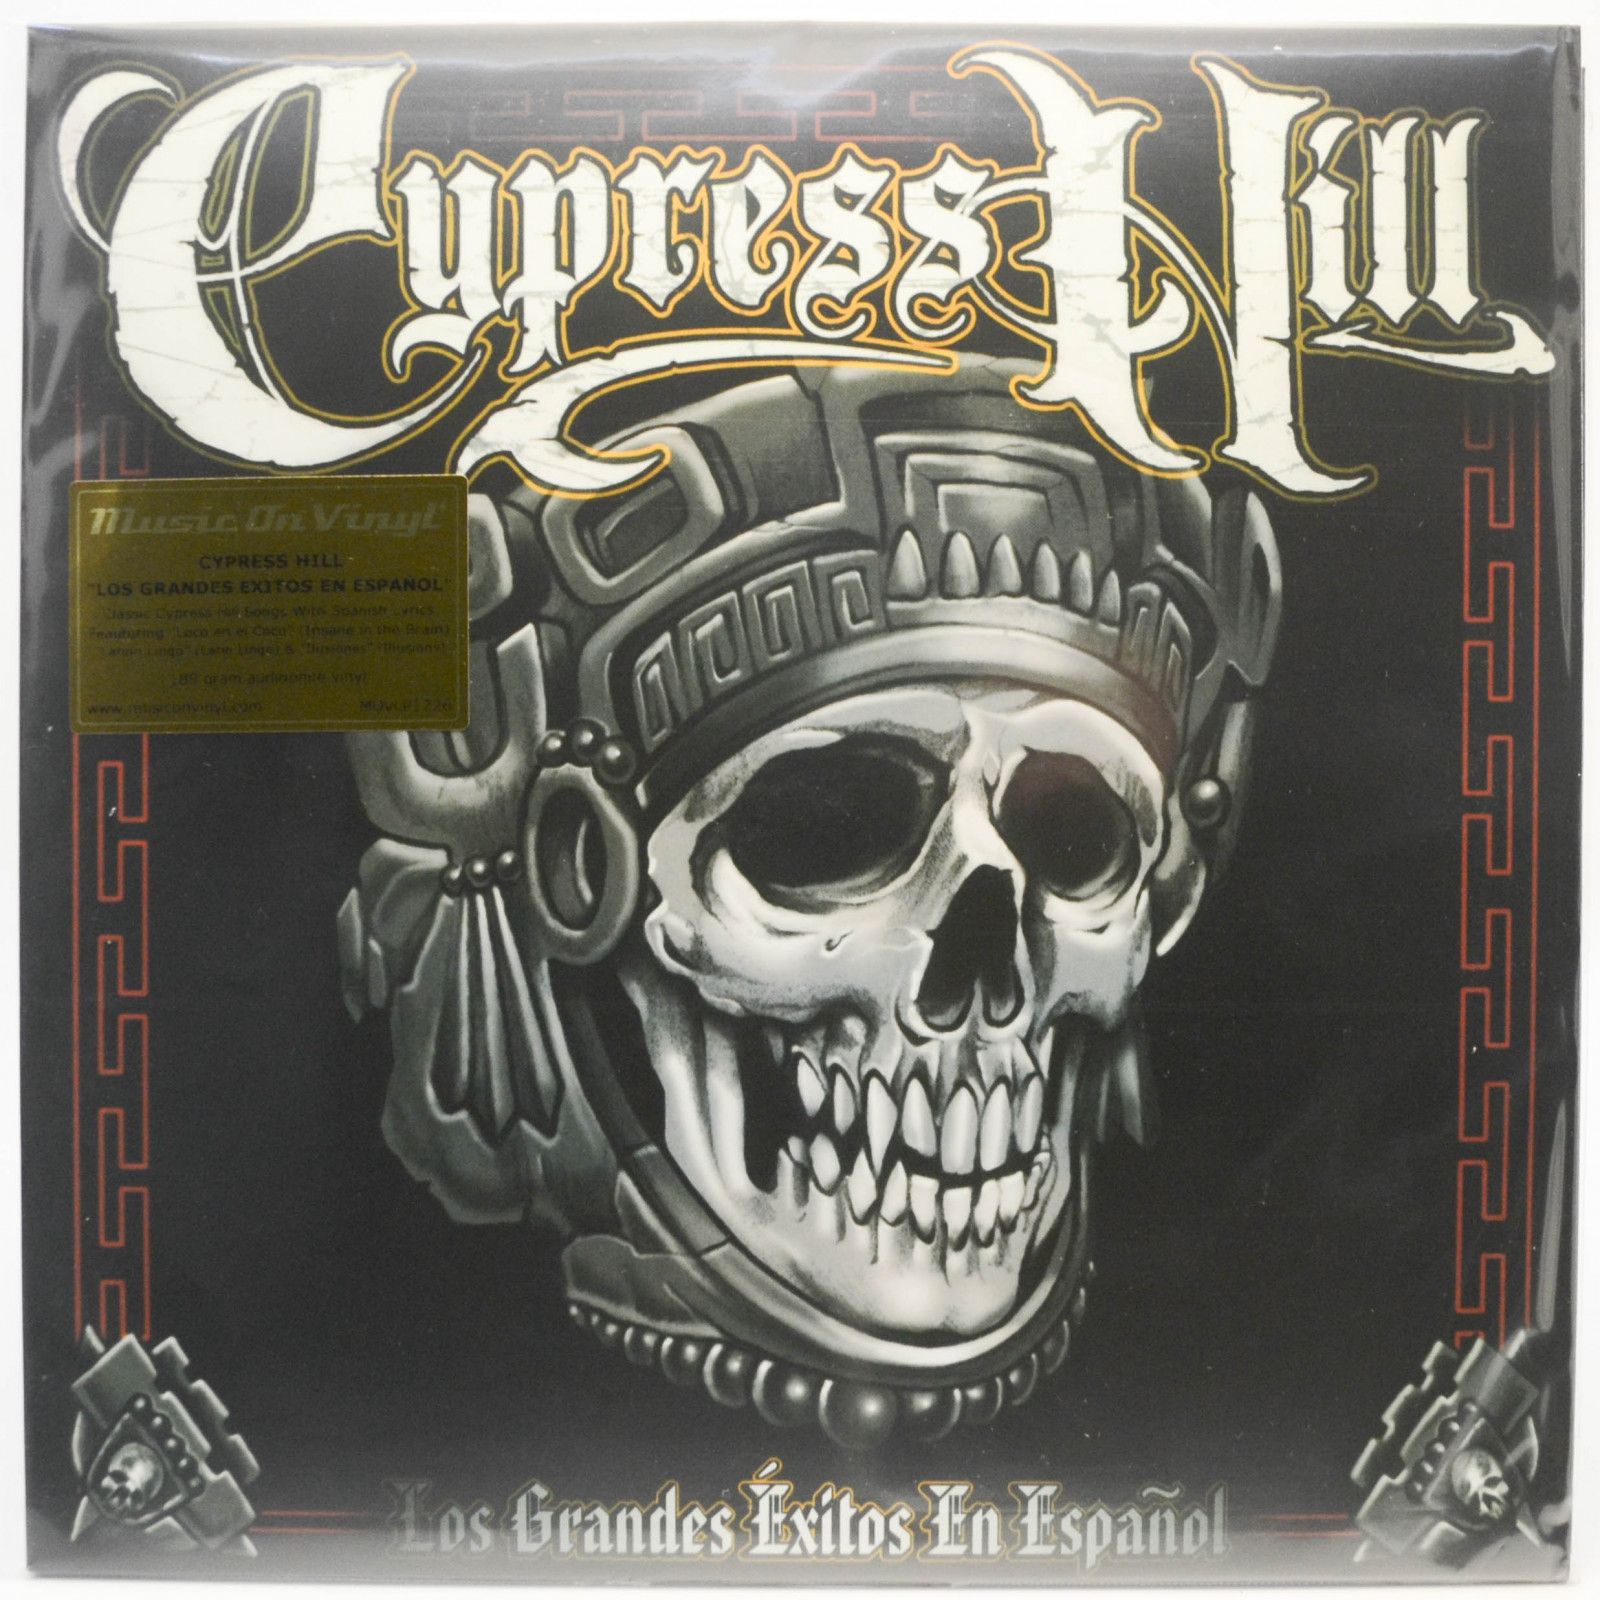 Cypress Hill — Los Grandes Éxitos En Español, 1999